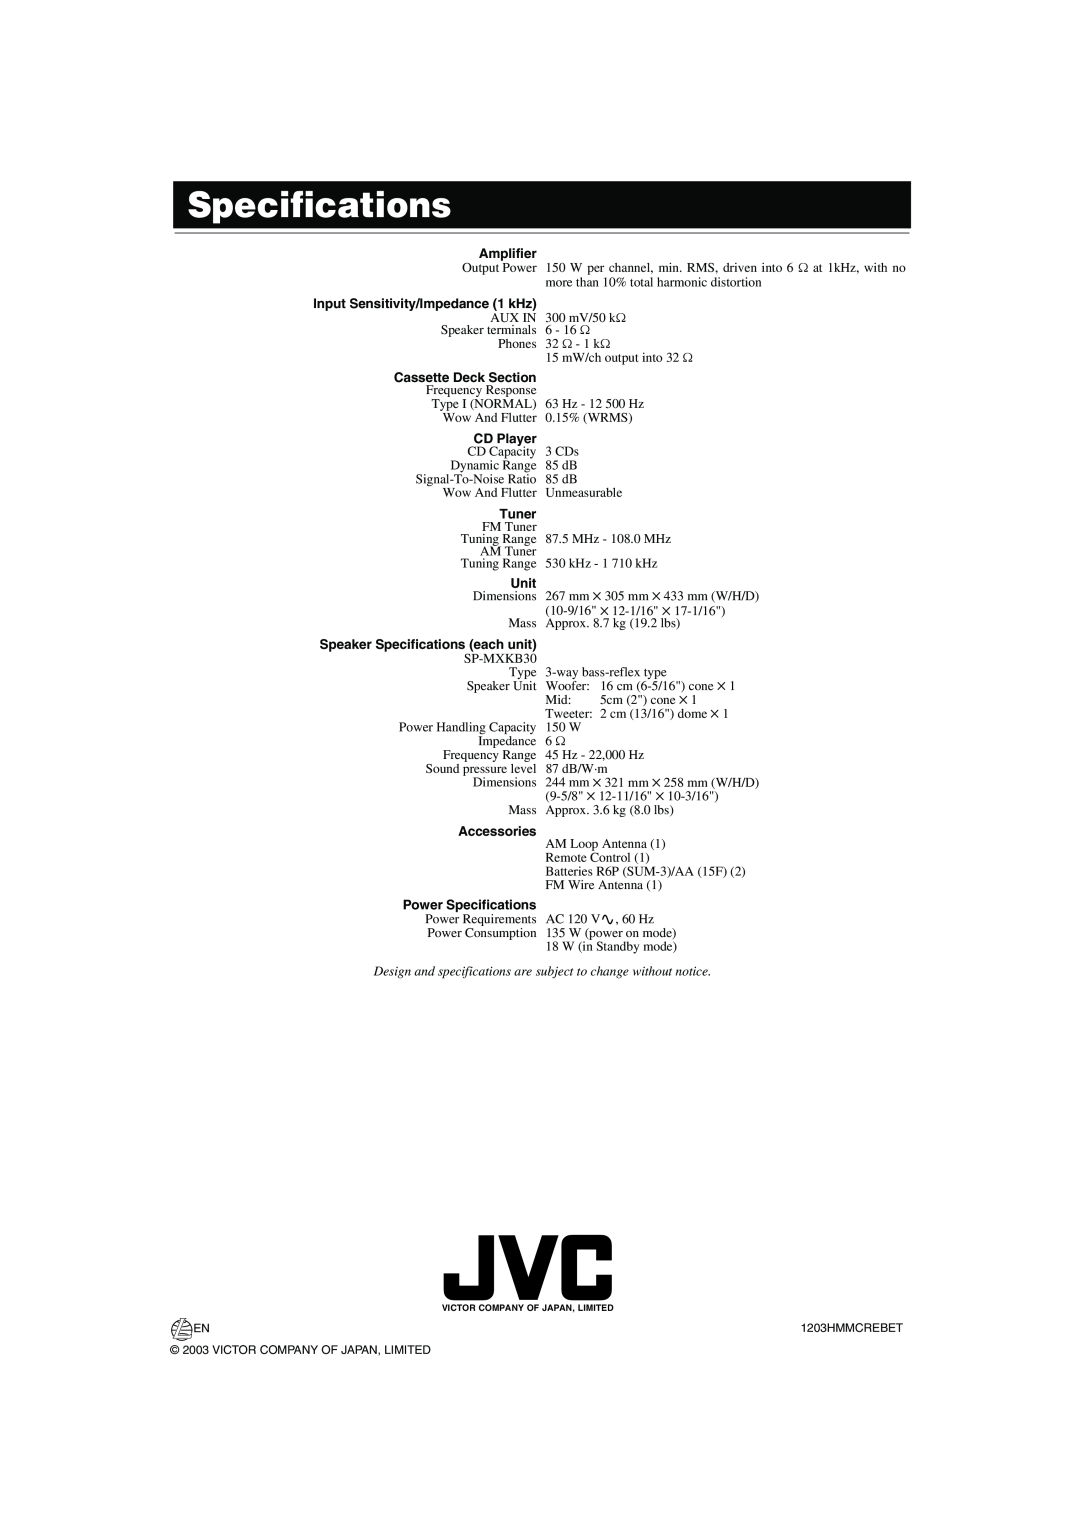 JVC MX-KB30 Specifications, Amplifier, Input Sensitivity/Impedance 1 kHz, Cassette Deck Section, CD Player, Tuner, Unit 